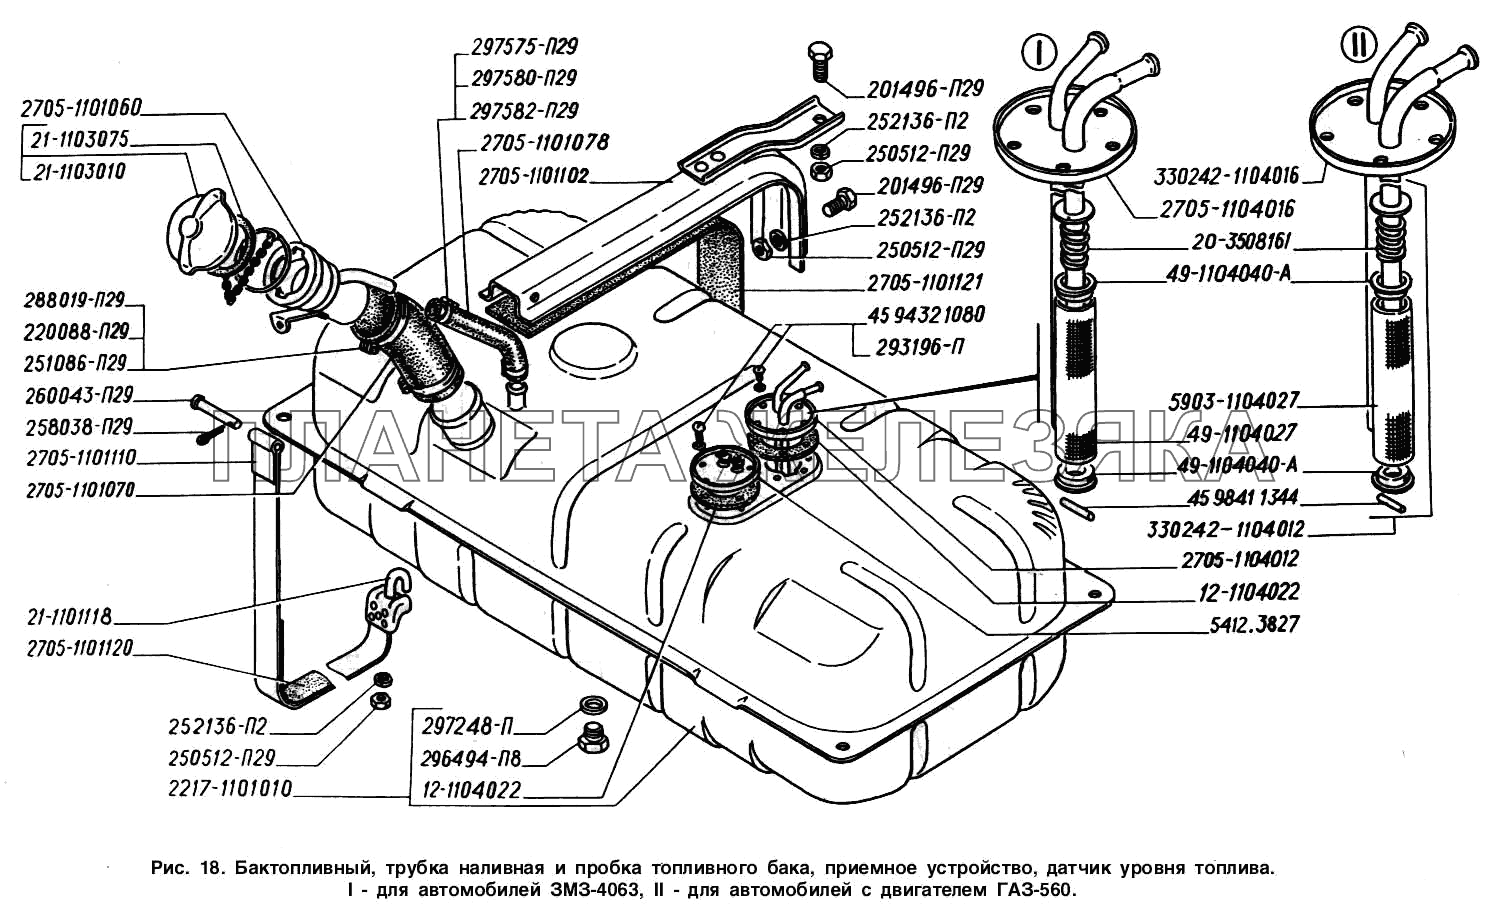 Бак топливный, труба наливная и пробка топливного бака, приемное устройство, датчик уровня топлива: I - для автомобилей с двигателем ЗМЗ-4063, II - для автомобилей с двигателем ГАЗ-560 ГАЗ-2217 (Соболь)